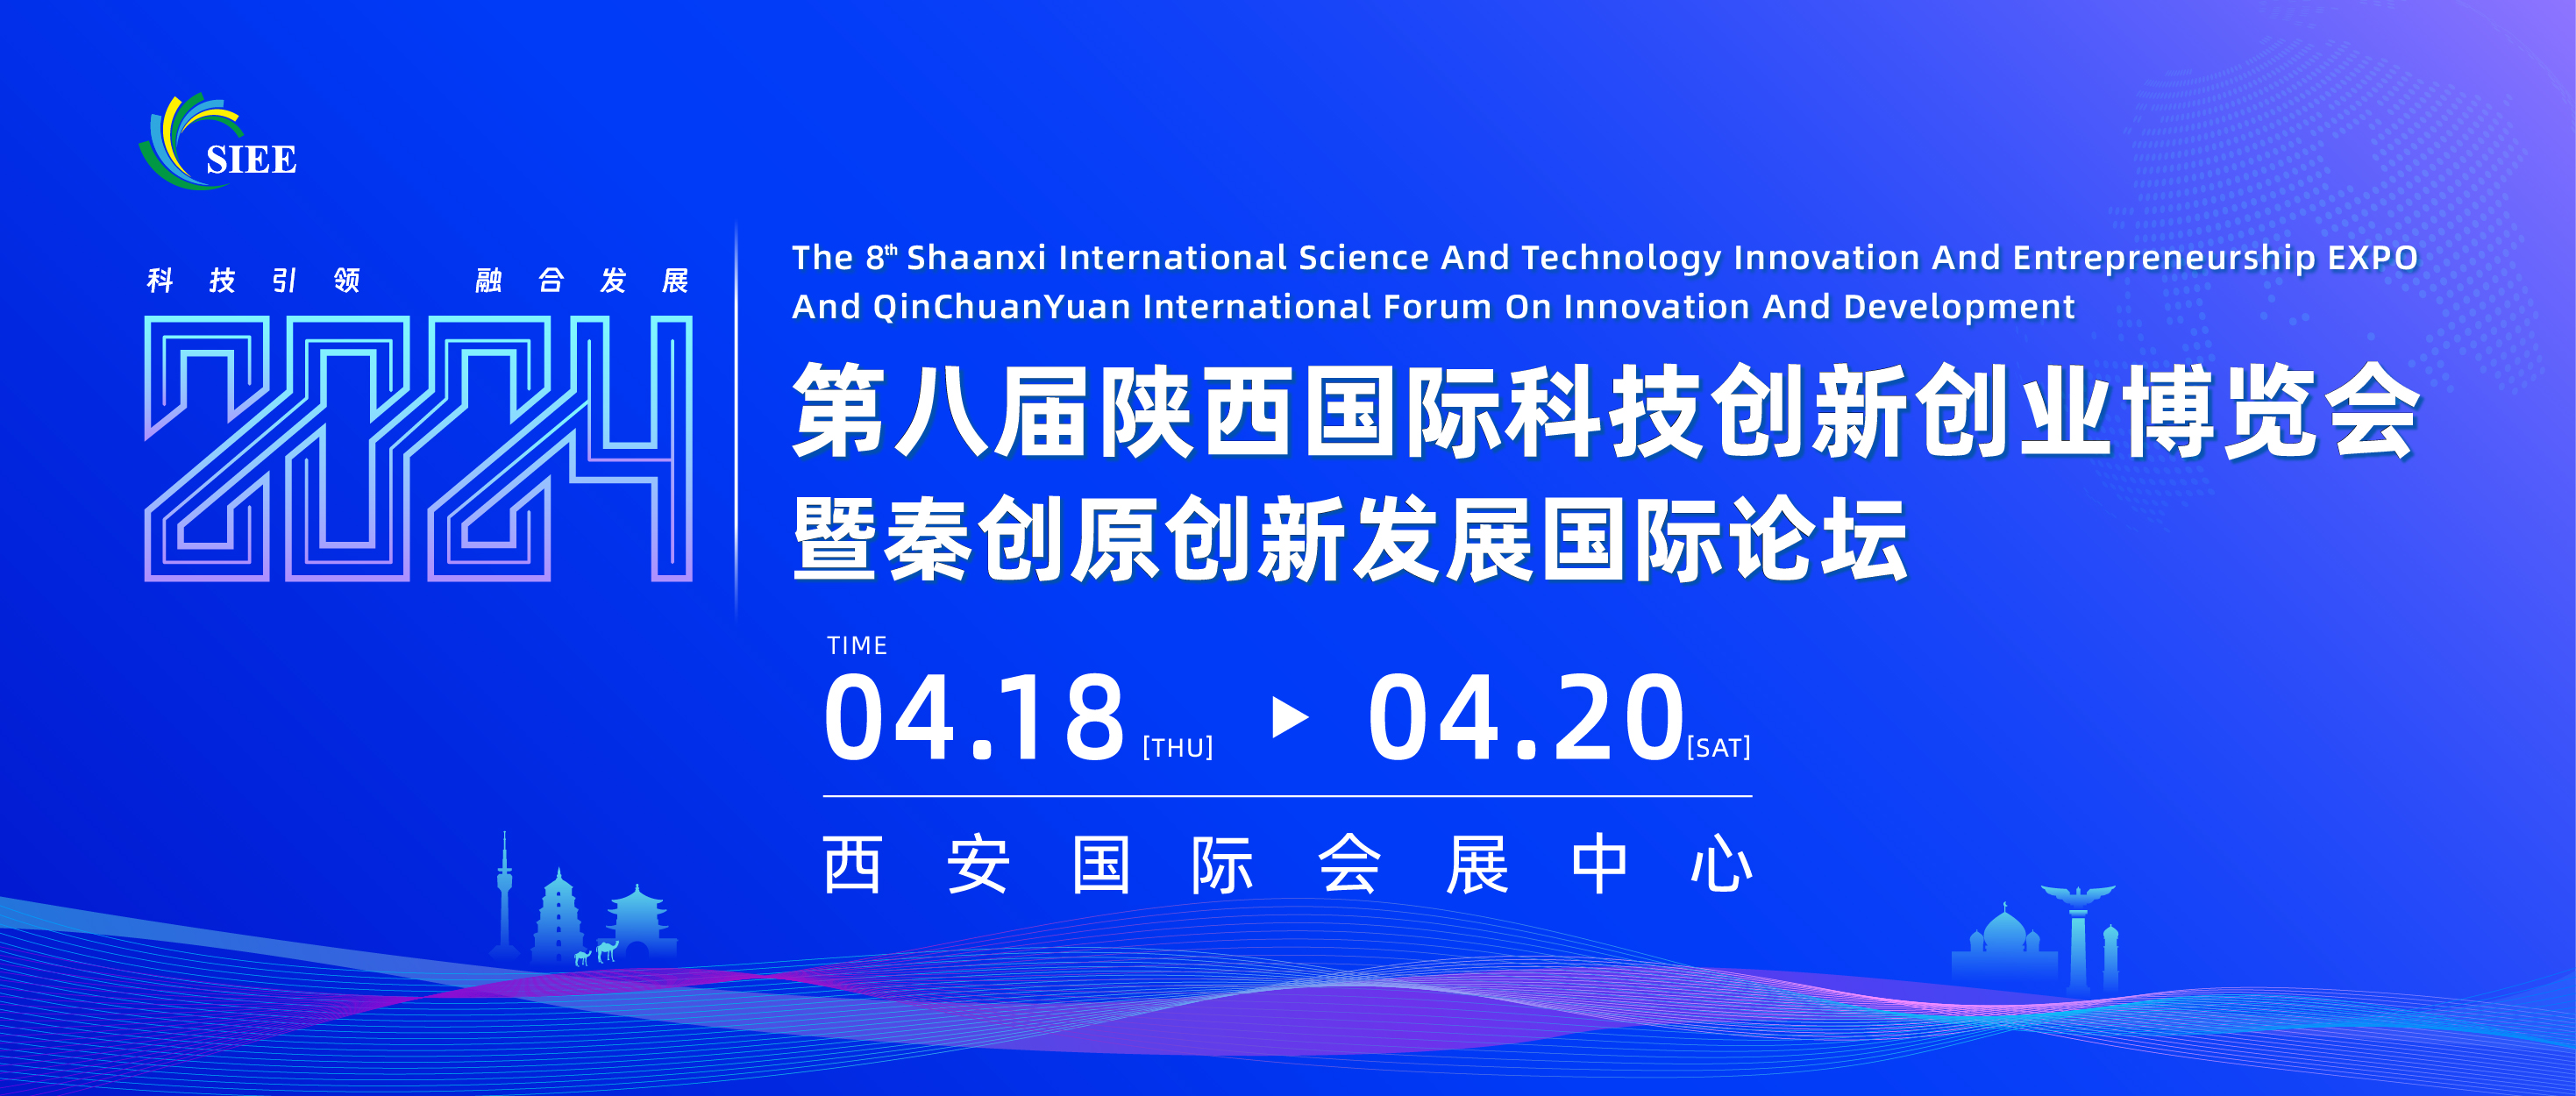 关于征集第八届陕西国际科技创新创业博览会合作伙伴的通知